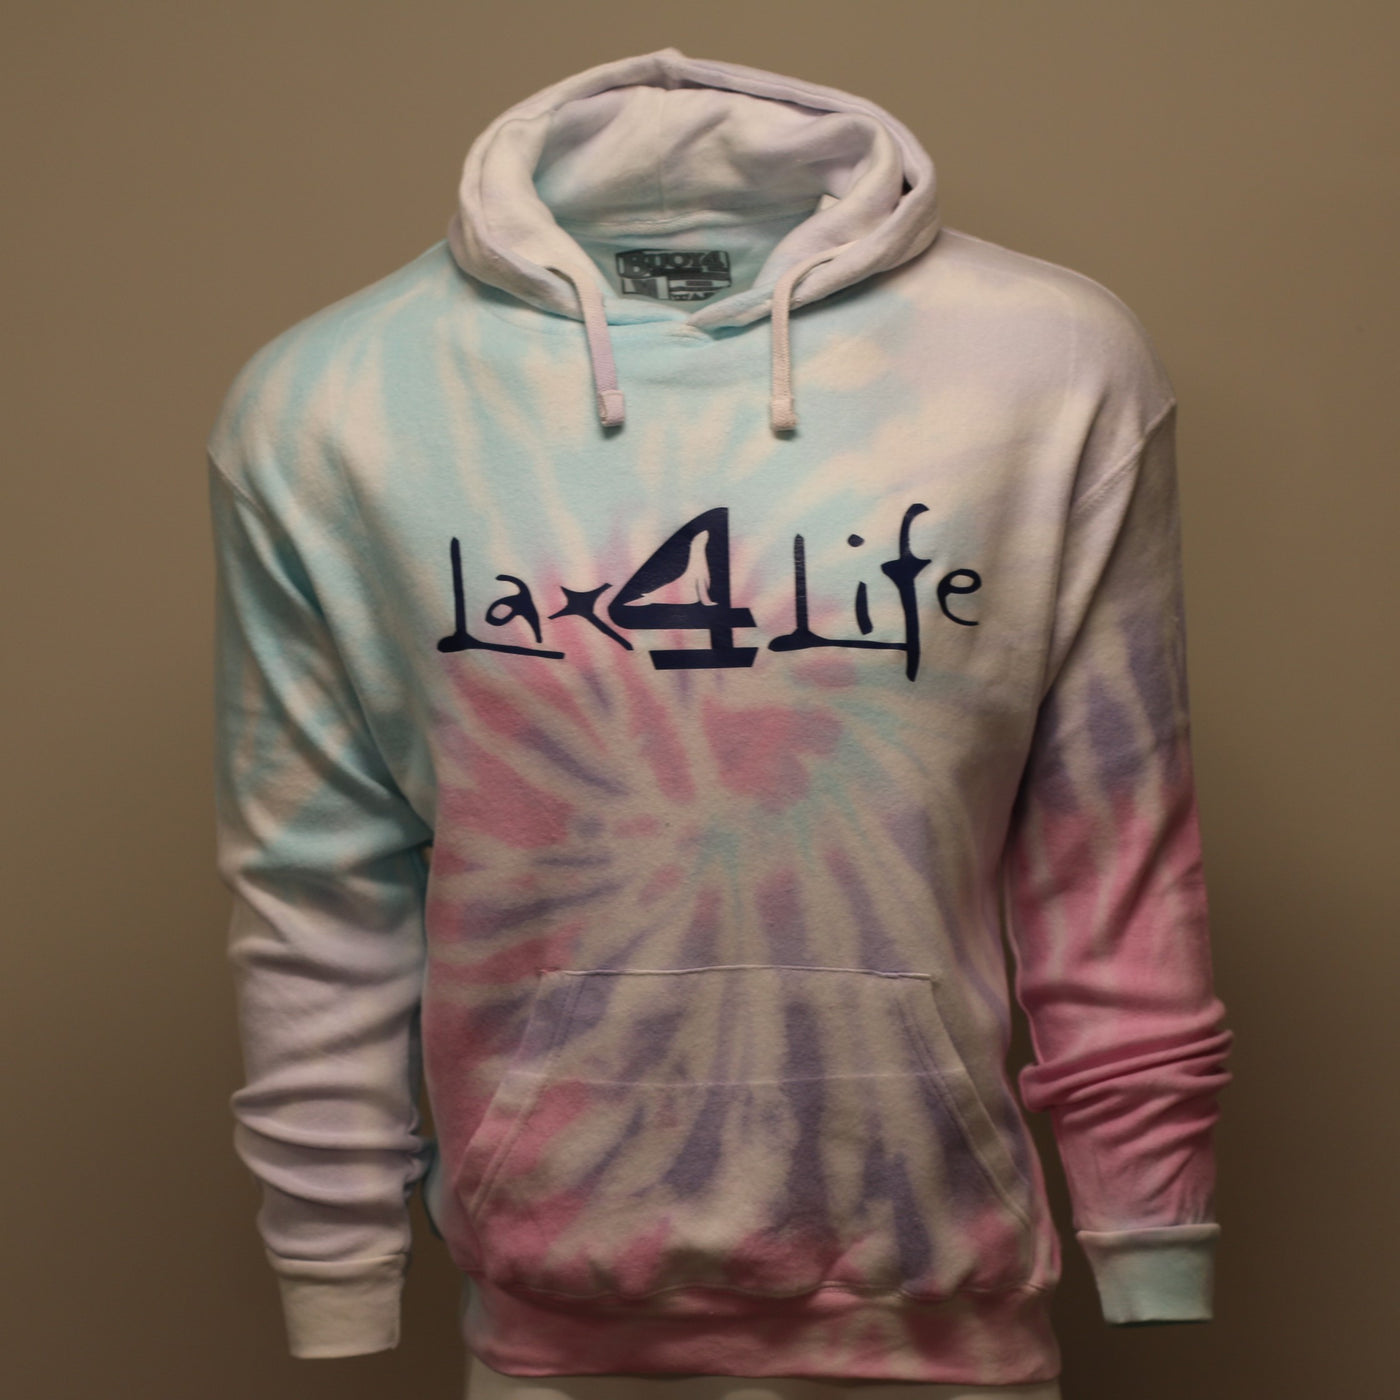 Lax 4 Life - Tie-Dye